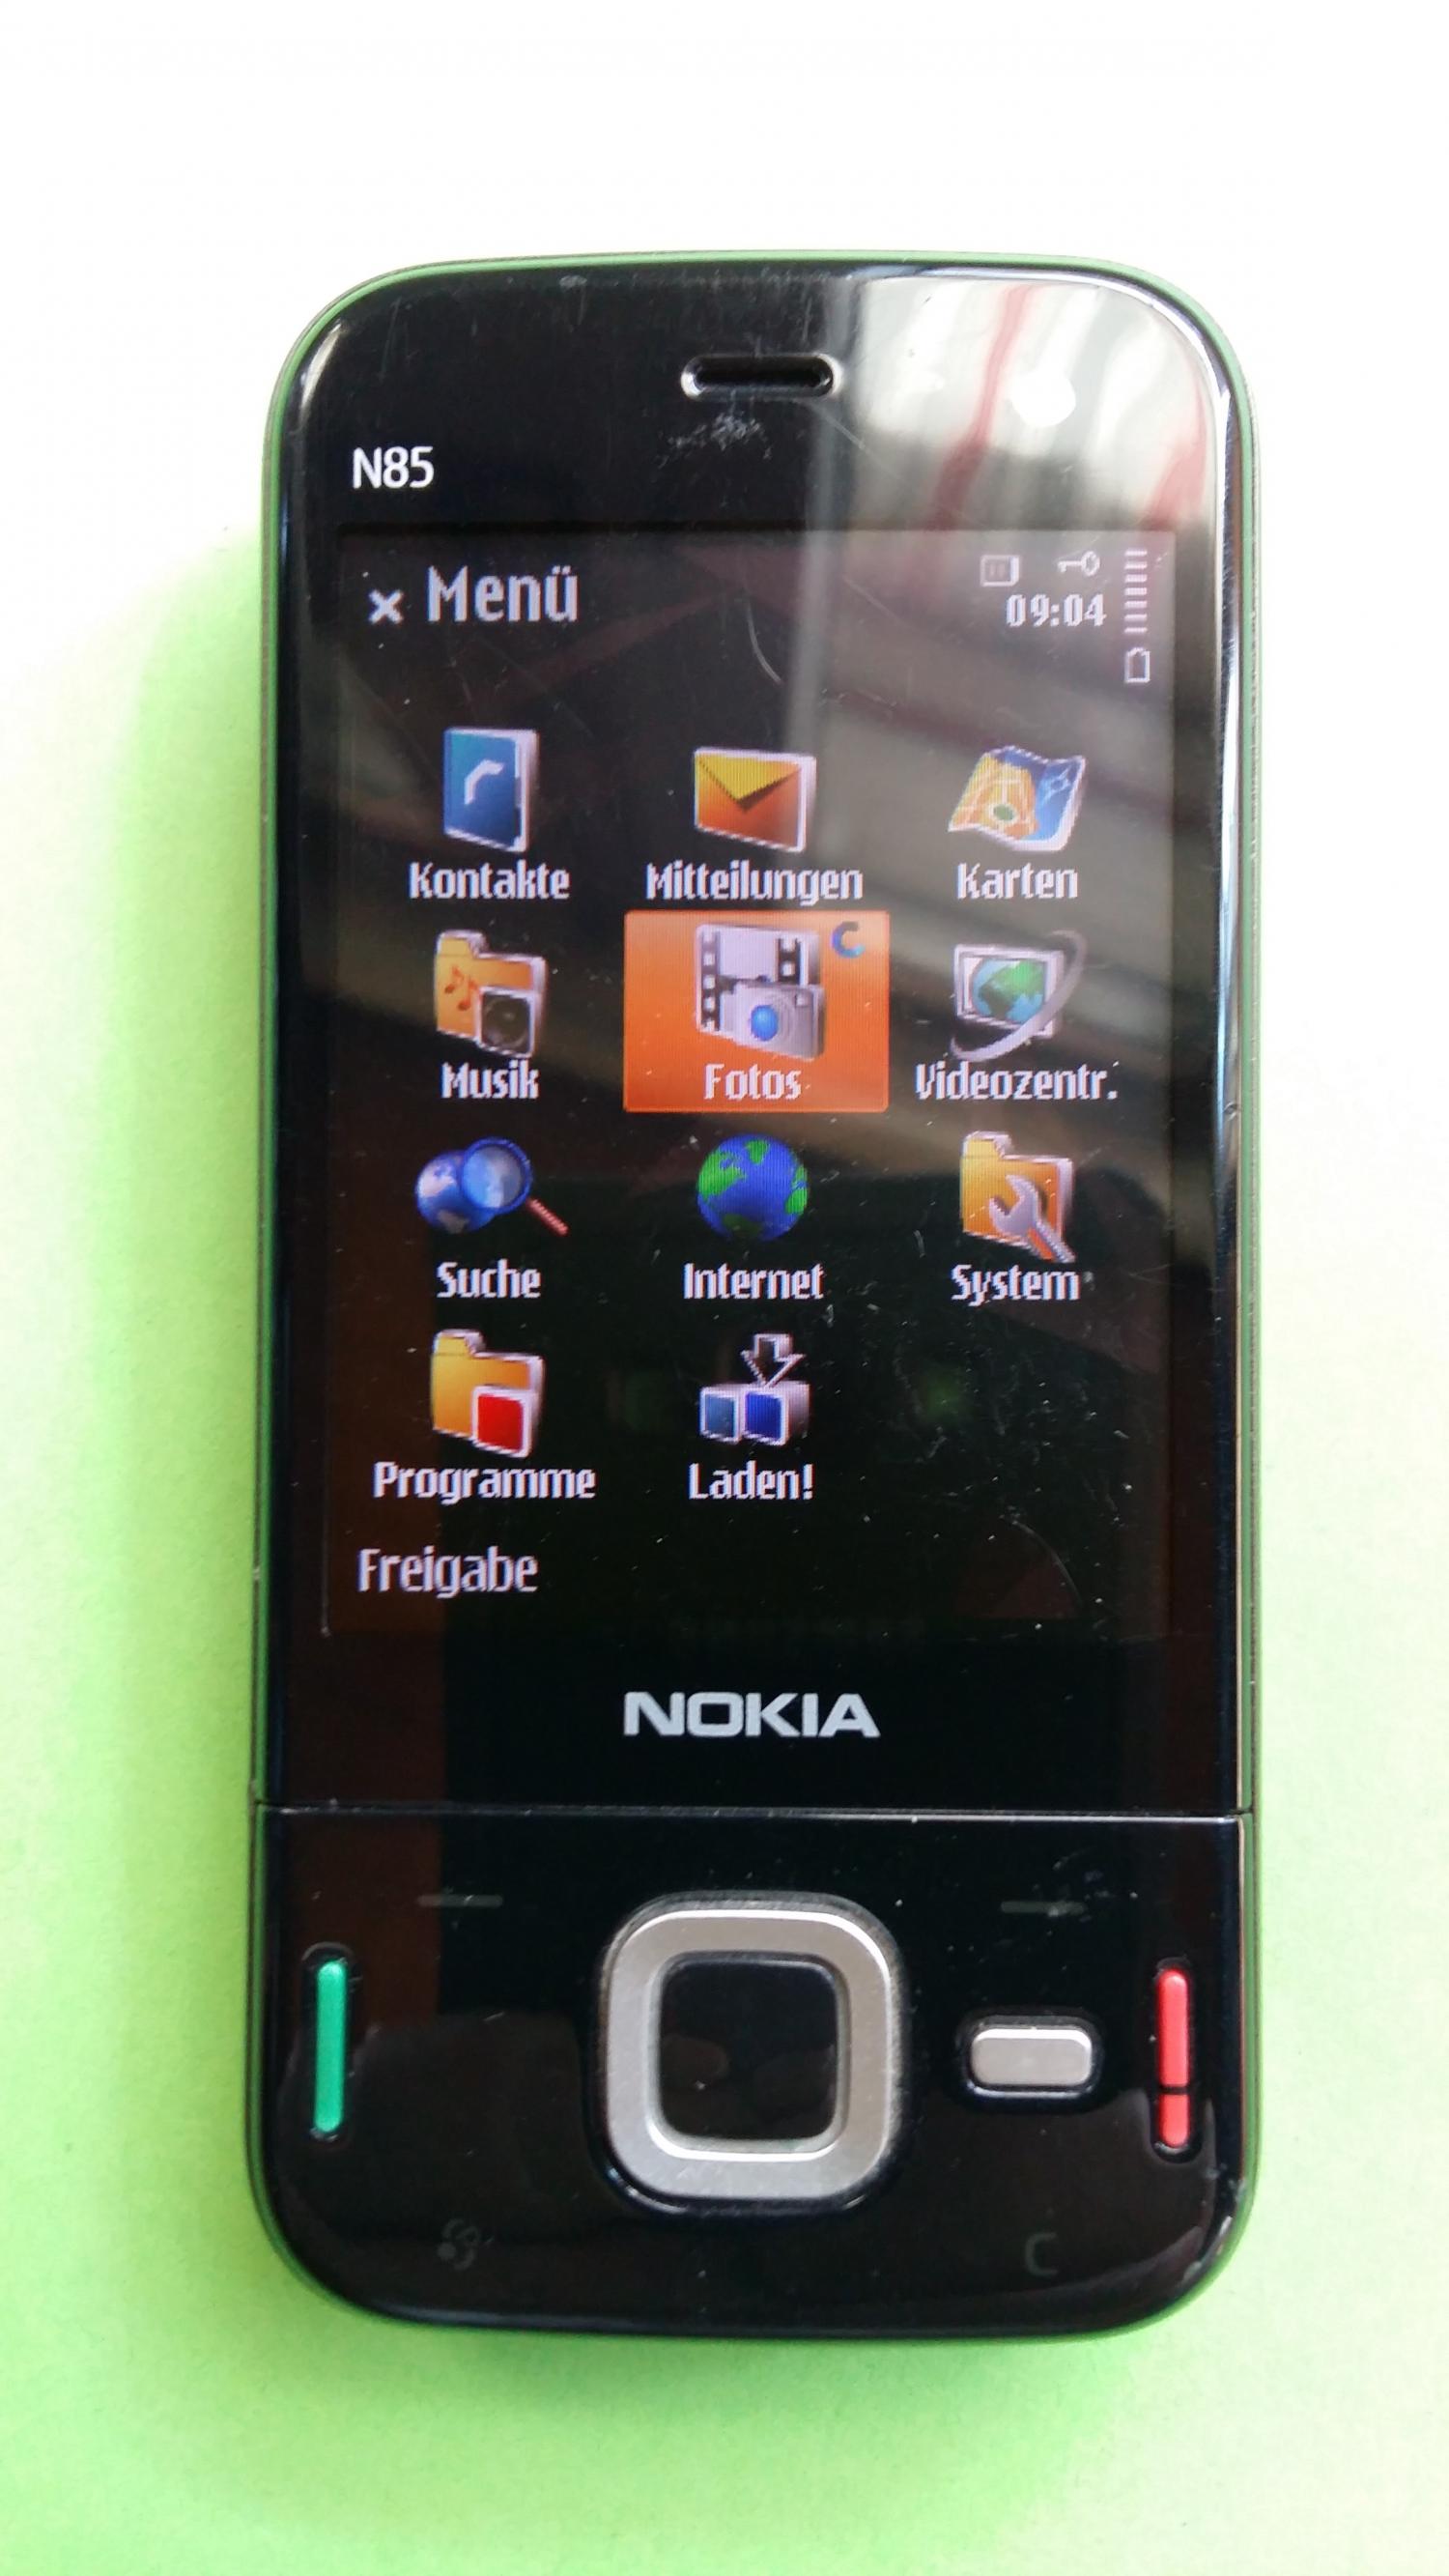 image-7321464-Nokia N85-1 (1)1.jpg